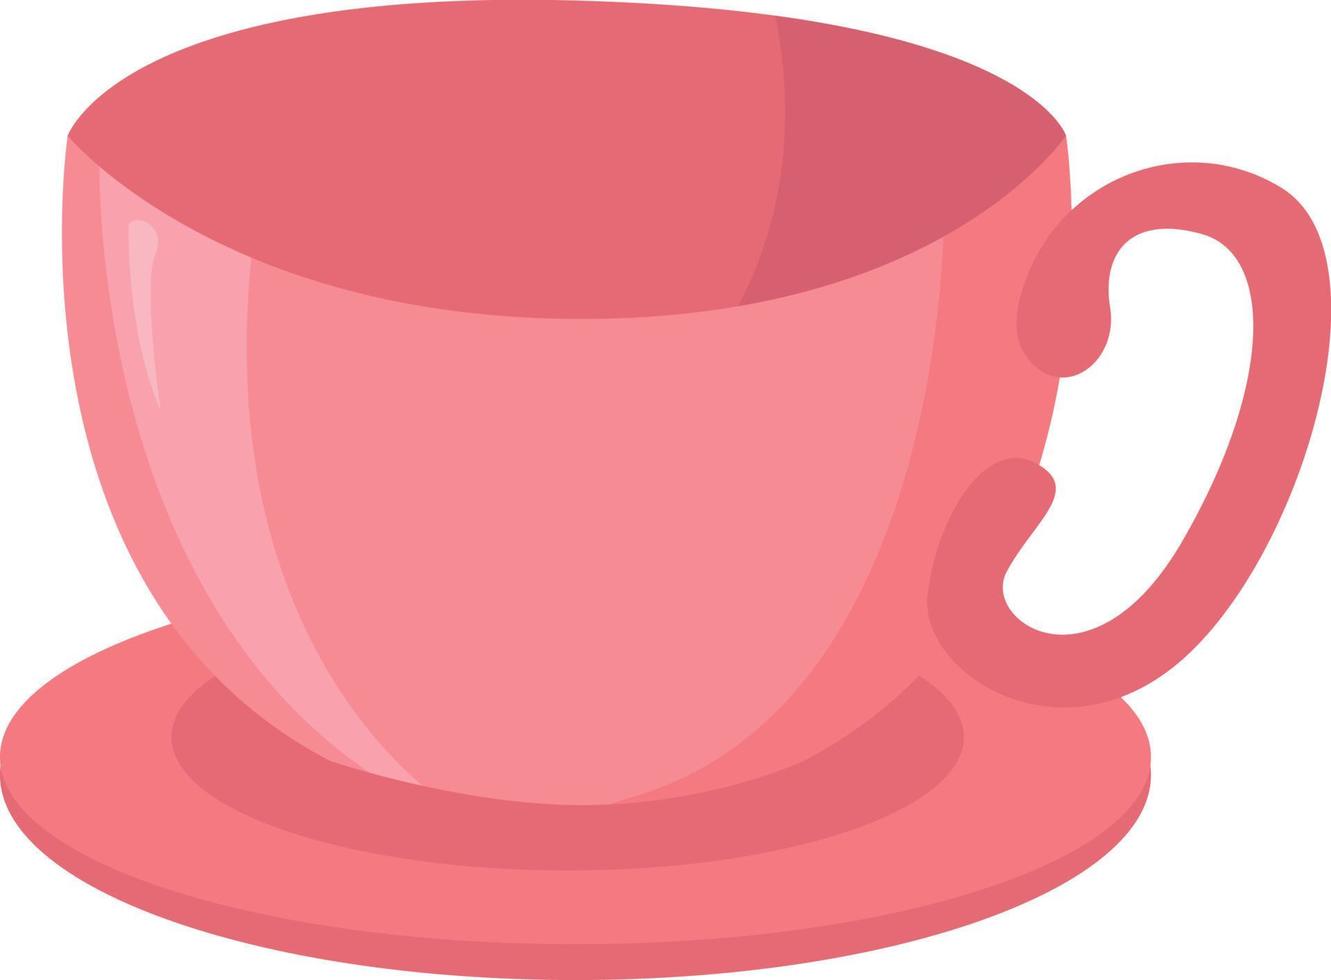 xícara de chá rosa, ilustração, vetor em um fundo branco.